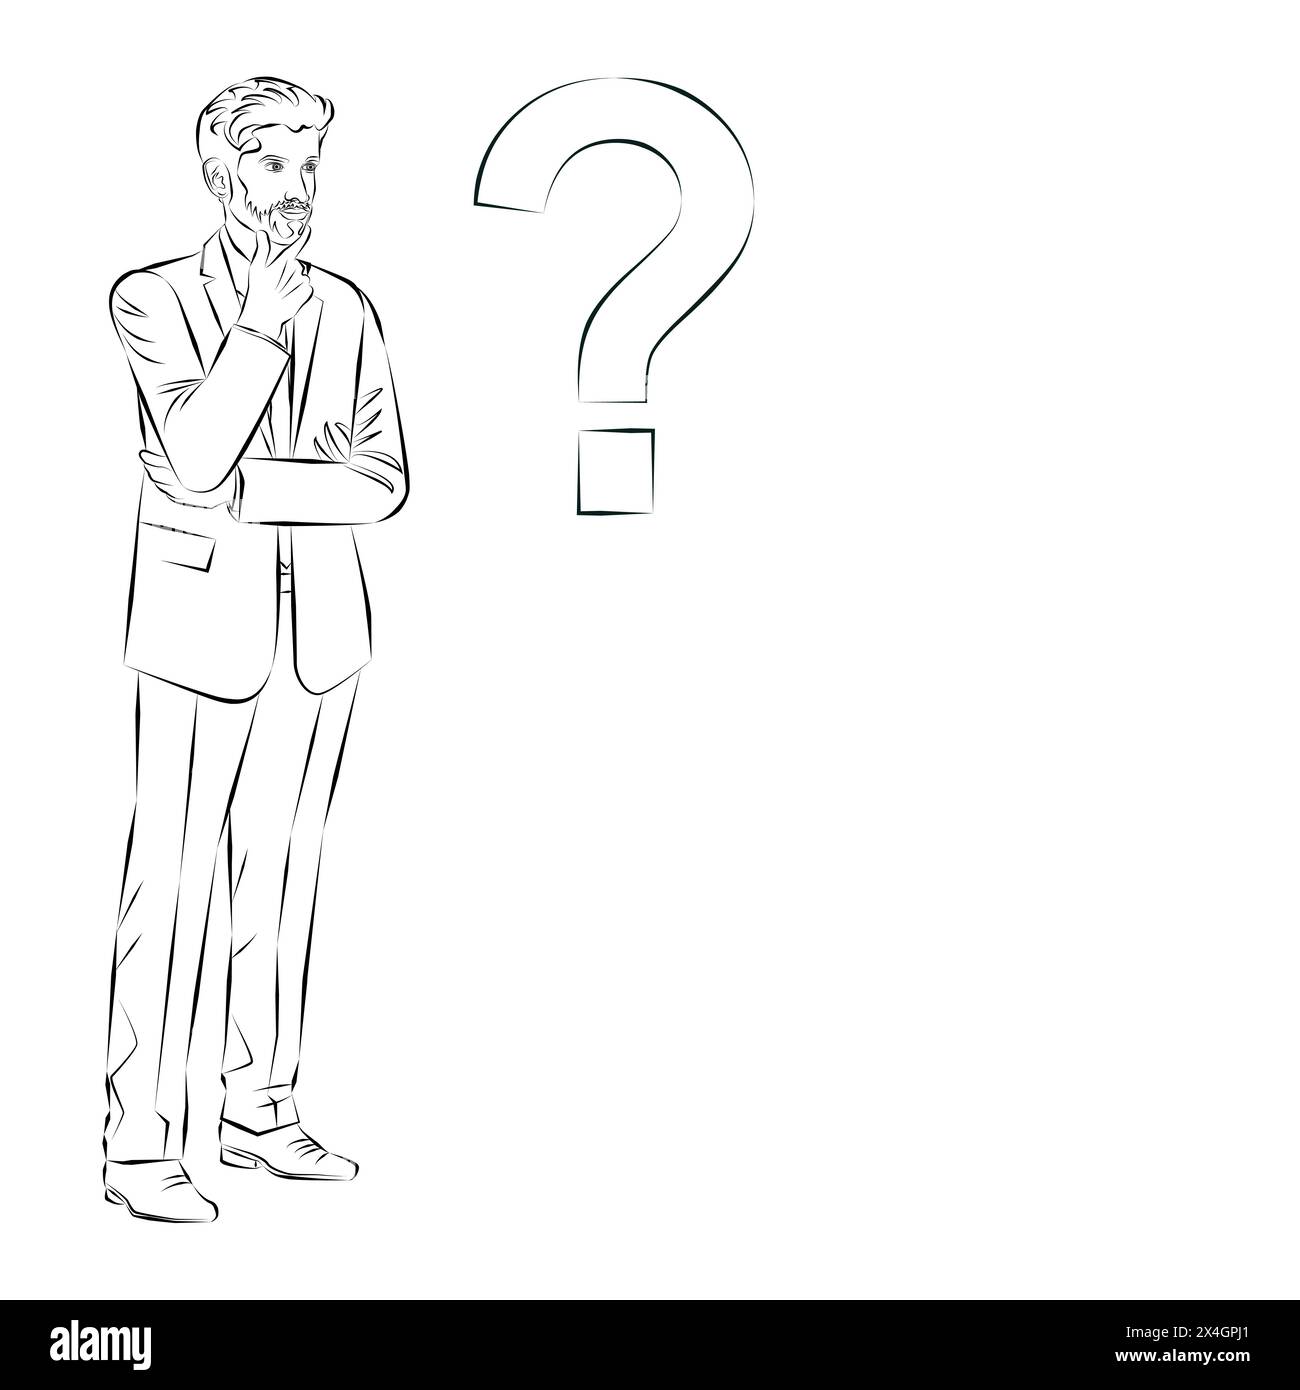 Ein Mann denkt während des Entscheidungsprozesses über Probleme und Fragen nach. Geschäftskonzept. Skizze. Vektorabbildung. Stock Vektor